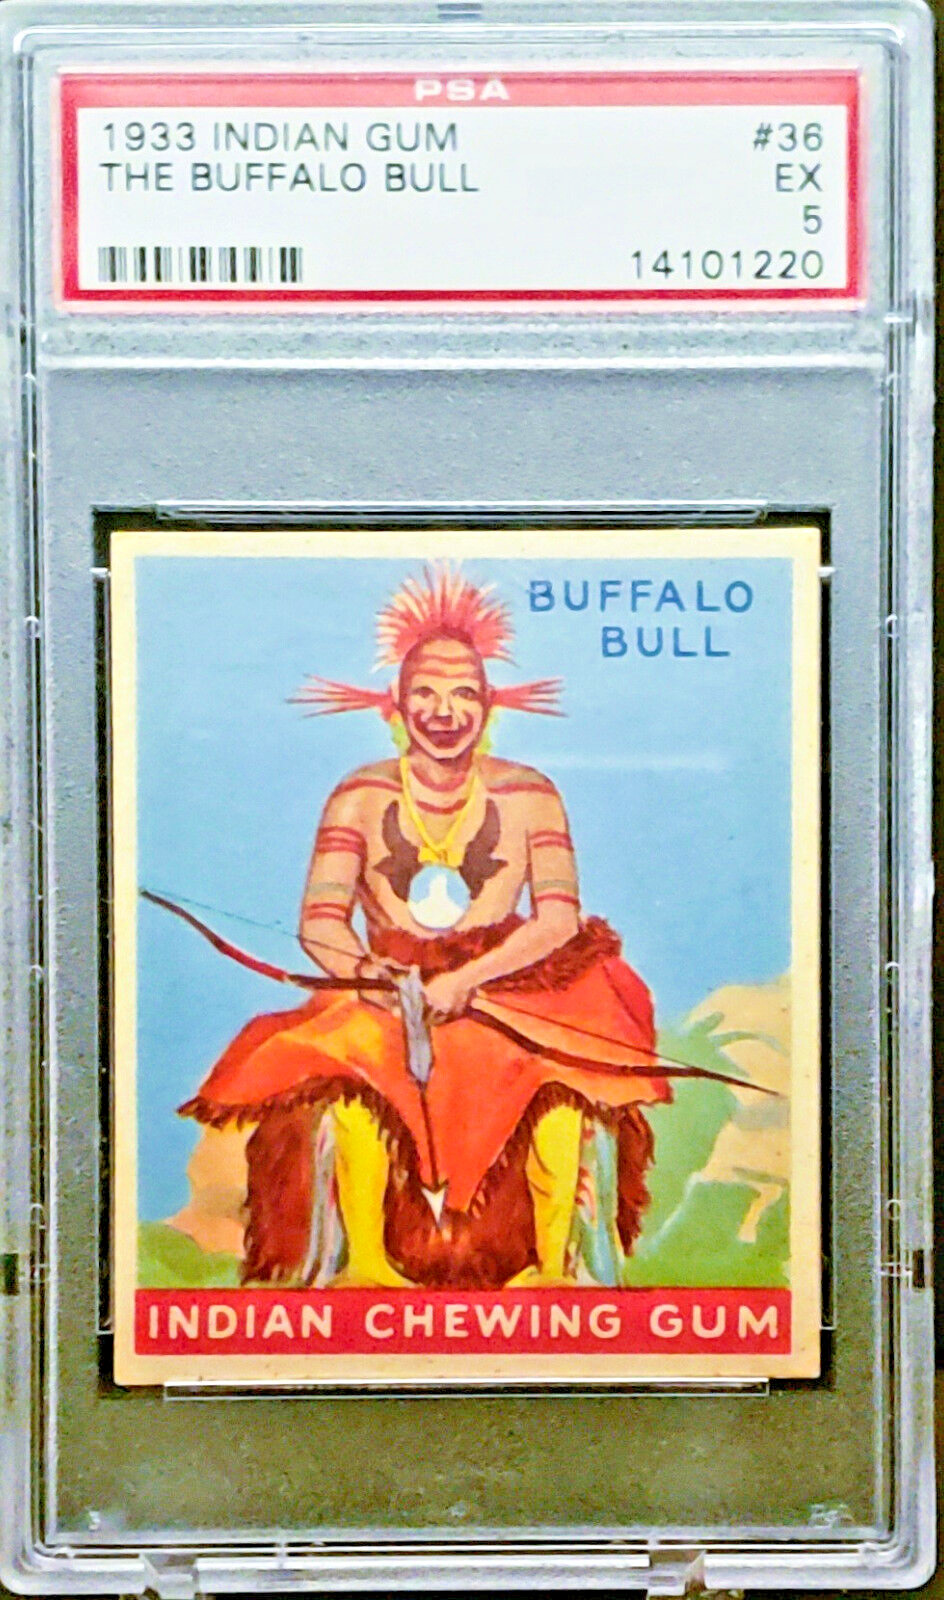 1933 R73 Goudey Indian Gum Card #36 THE BUFFALO BULL - Series 96 - PSA 5 - NICE